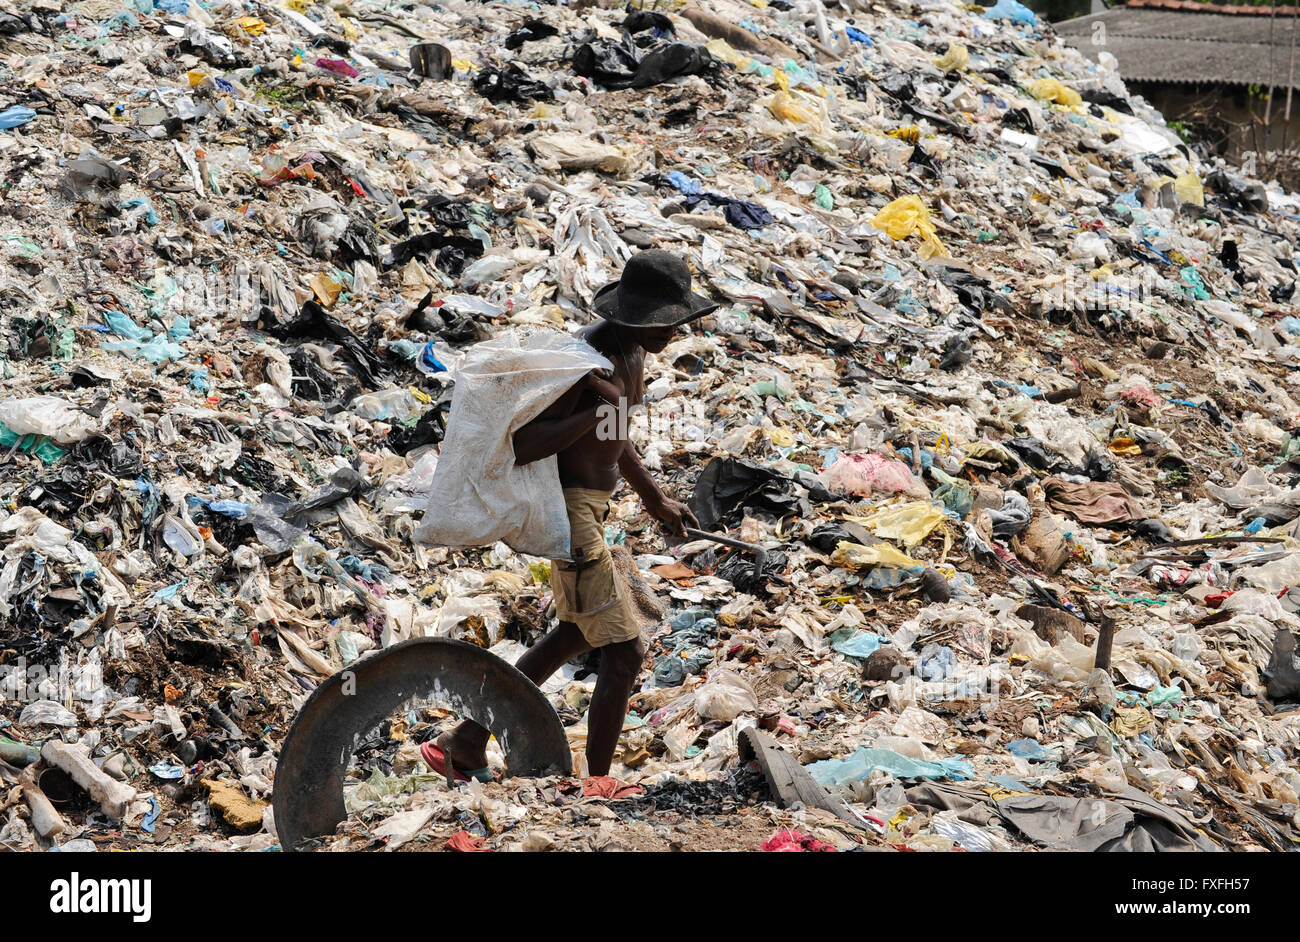 Sri Lanka Colombo, la montagne de déchets à Bloemendhal Road, rag picker / Muellberg Bloemendhal bei der Road, Muellsammler Banque D'Images